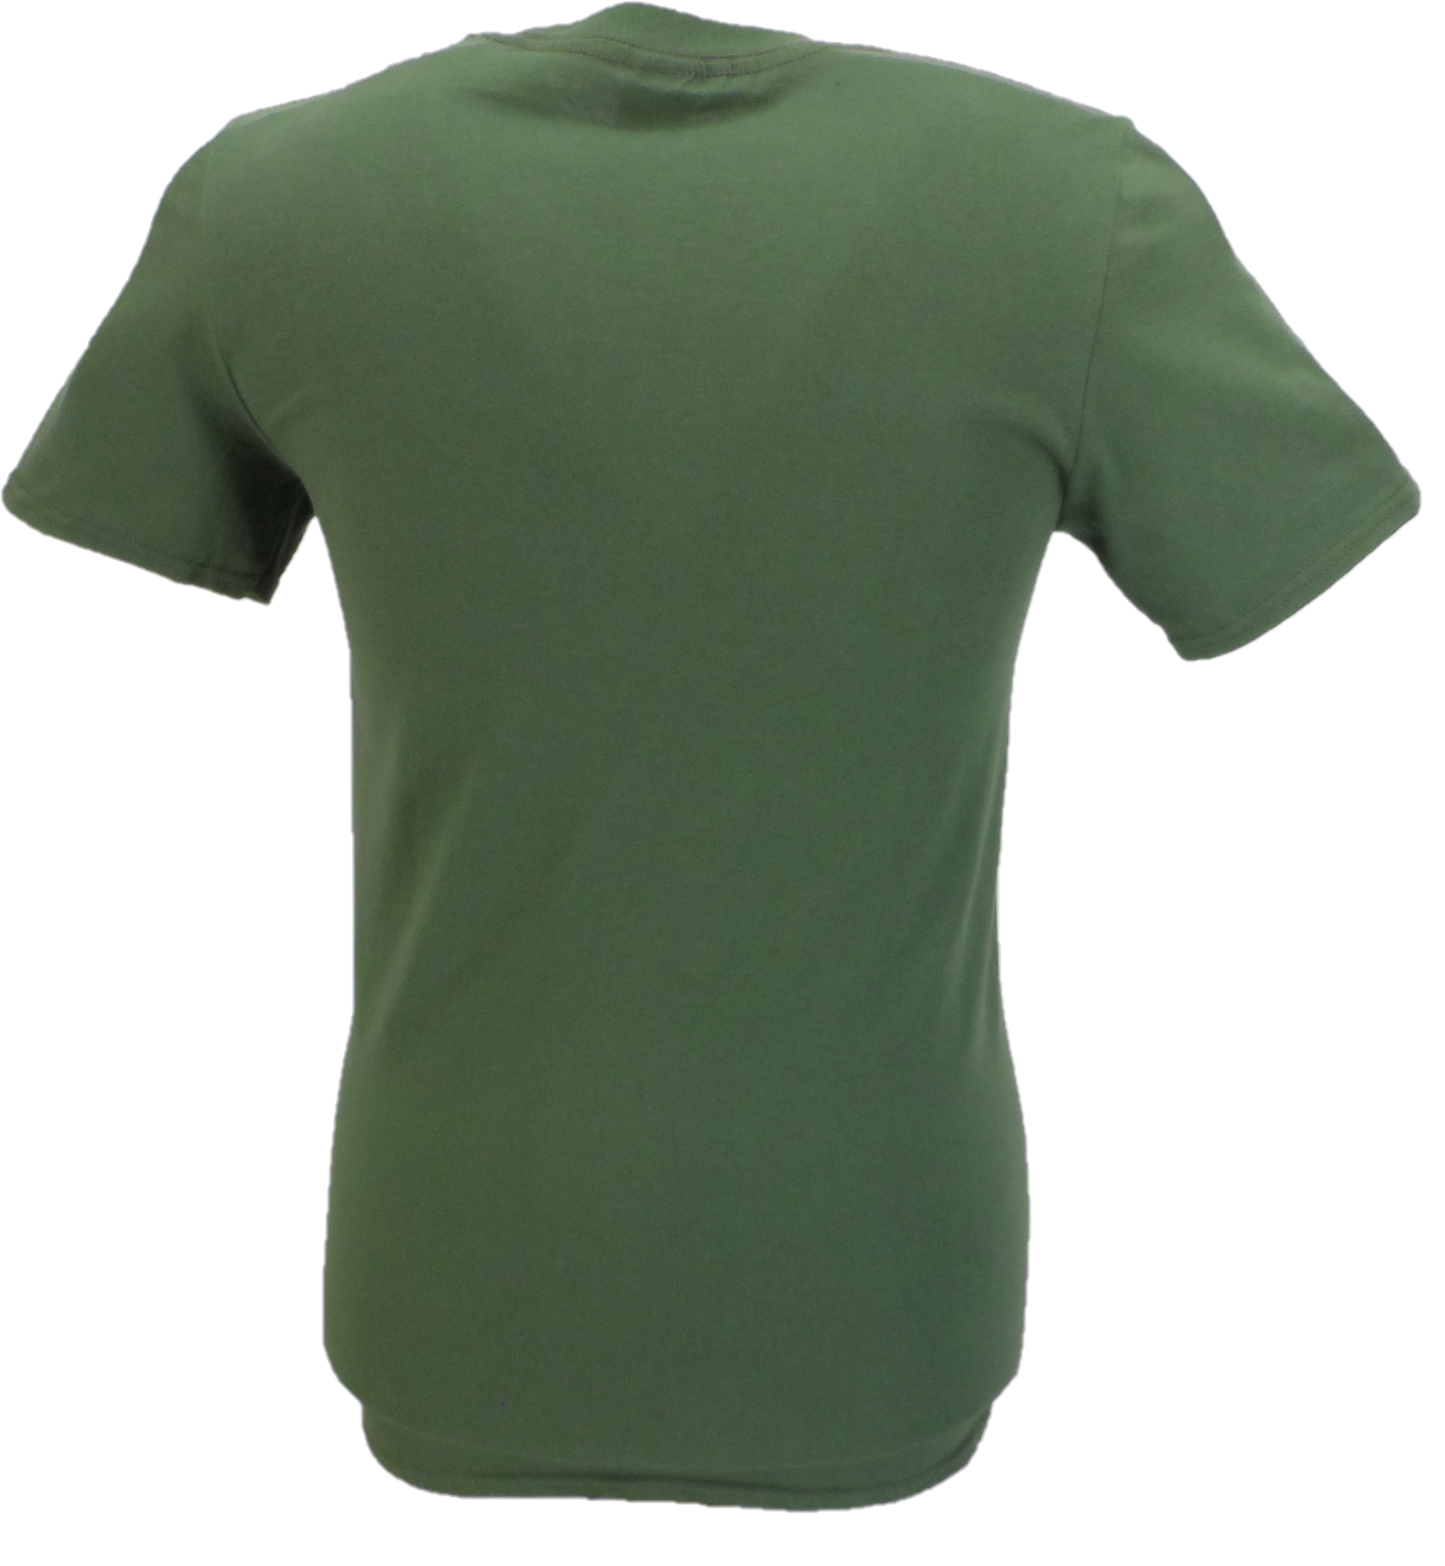 تي شيرت رجالي باللون الأخضر العسكري الرسمي ذو الشعار الخاص بلوك